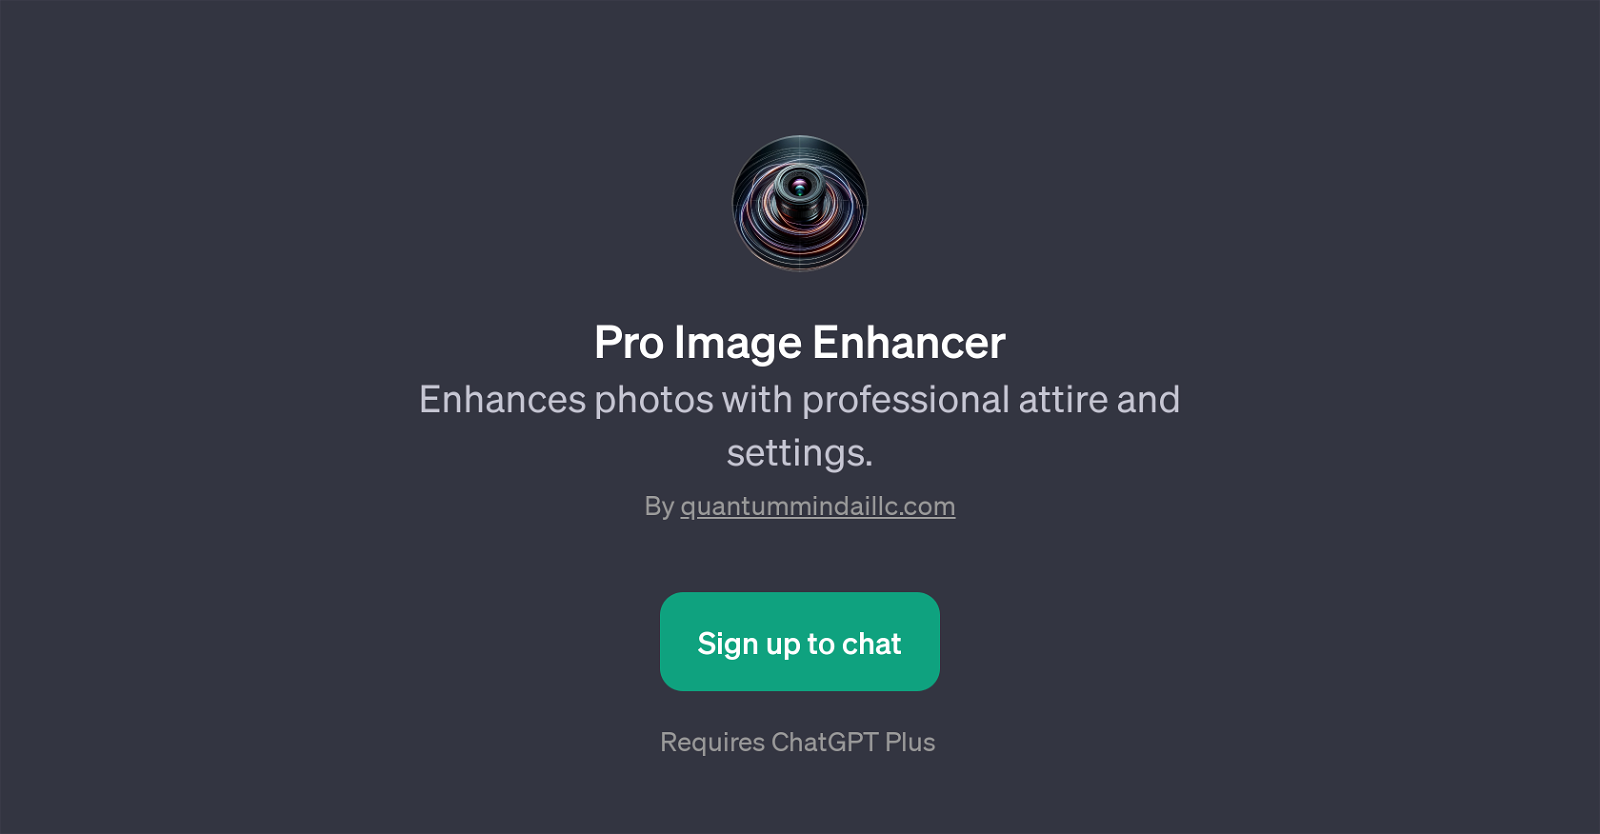 Pro Image Enhancer website